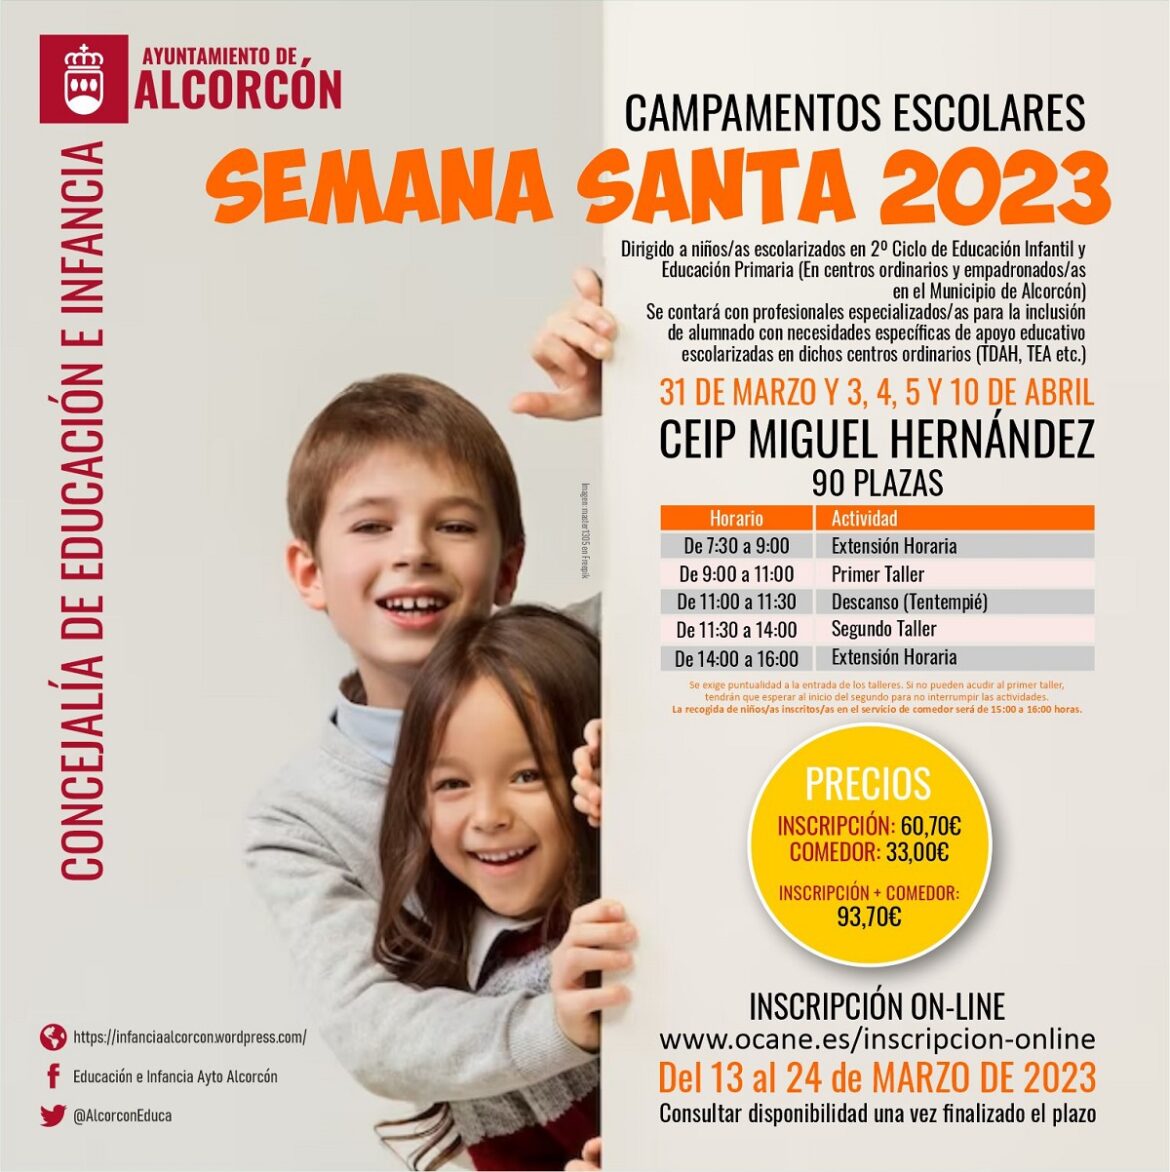 Campamentos Escolares Para La Semana Santa 2023 La Gaceta De Alcorcón 0531